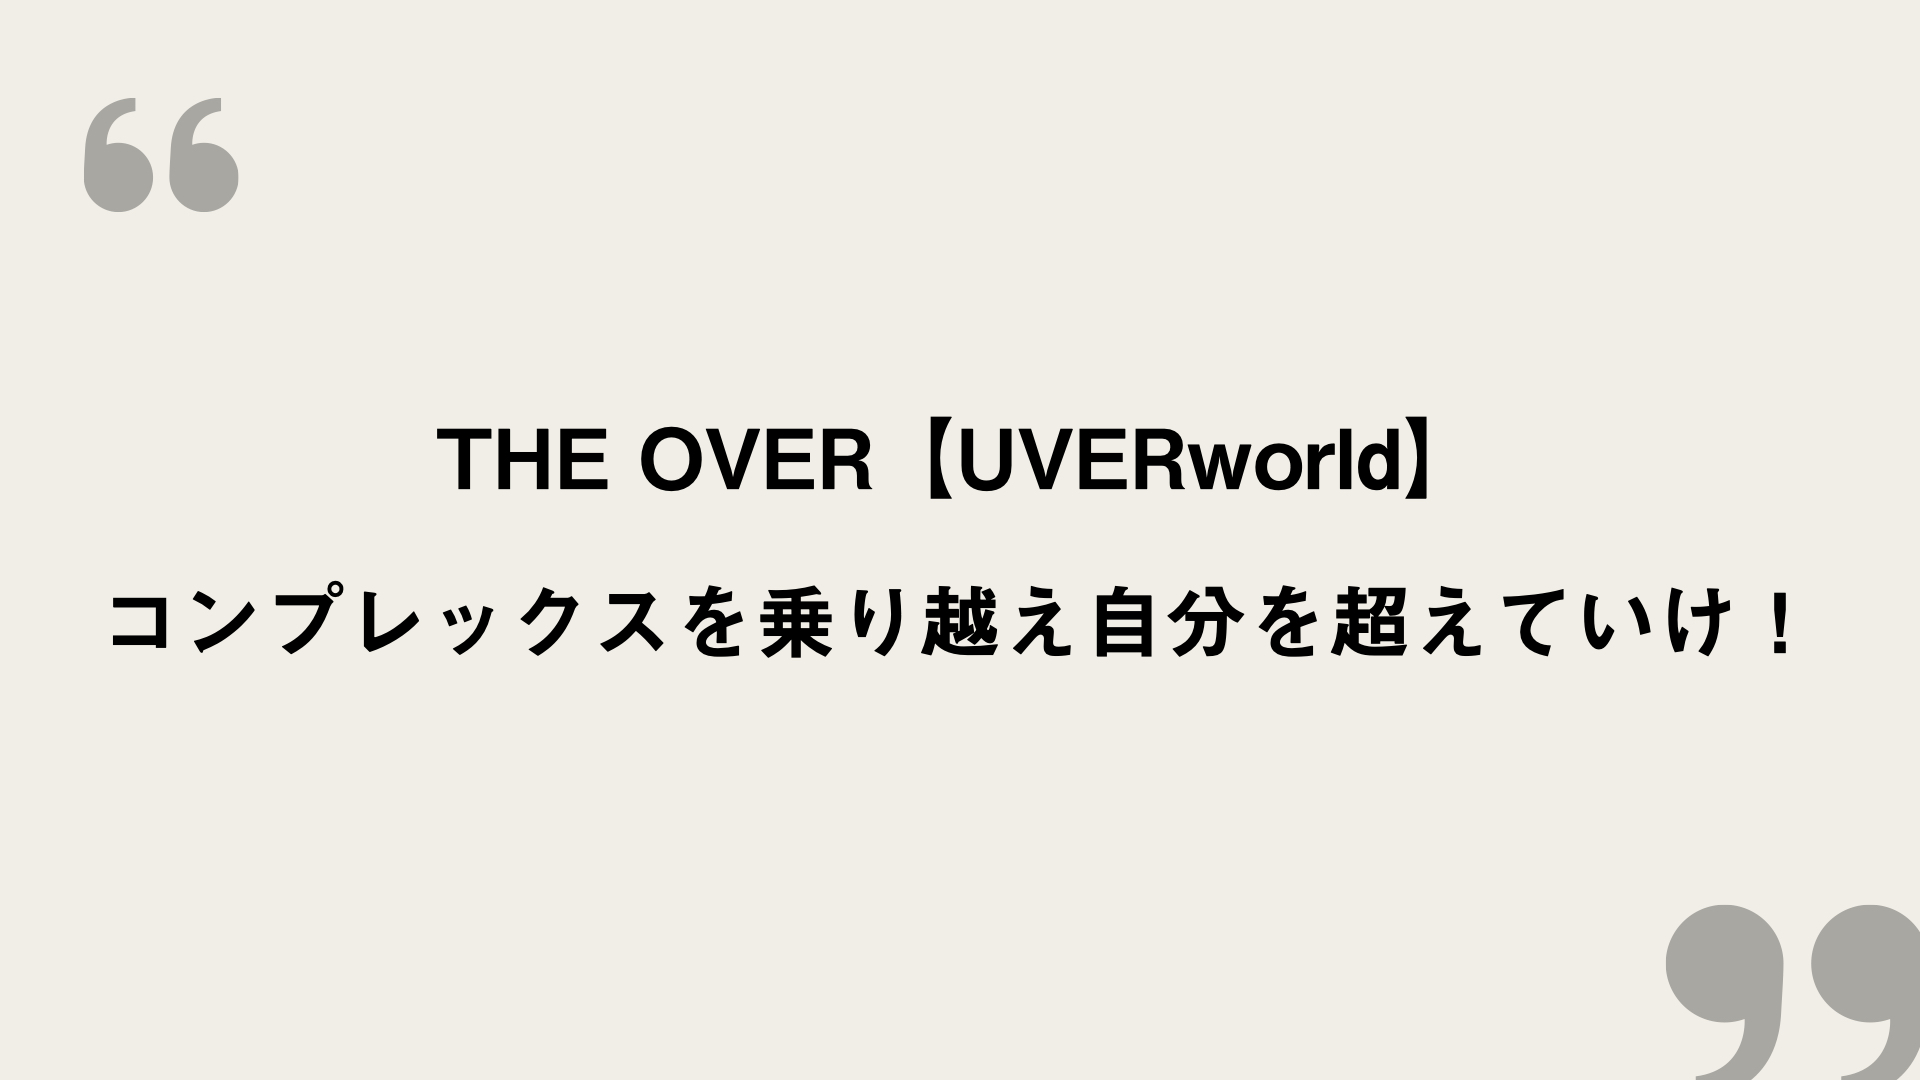 The Over Uverworld 歌詞の意味を考察 コンプレックスを乗り越え自分を超えていけ Framu Media